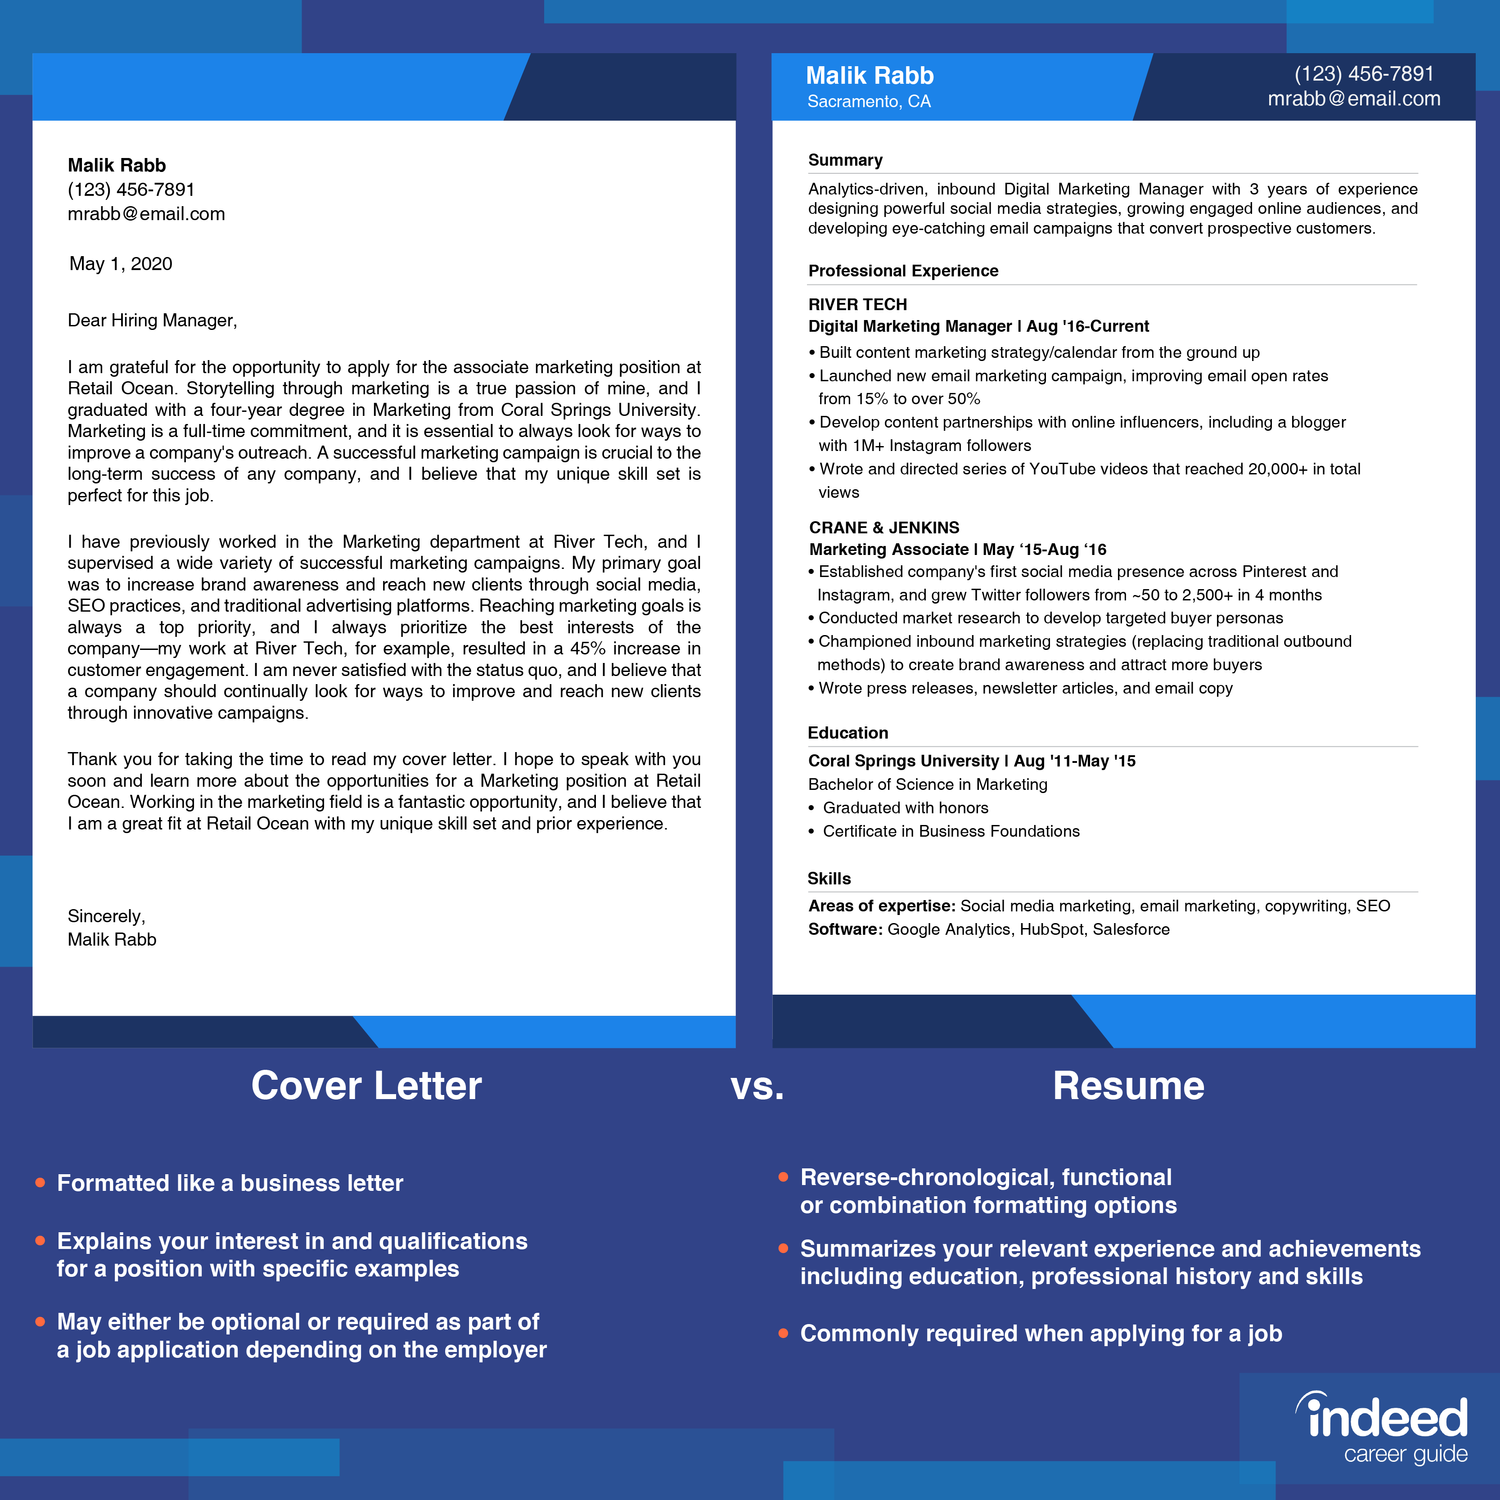 Cover Letter vs. Resume